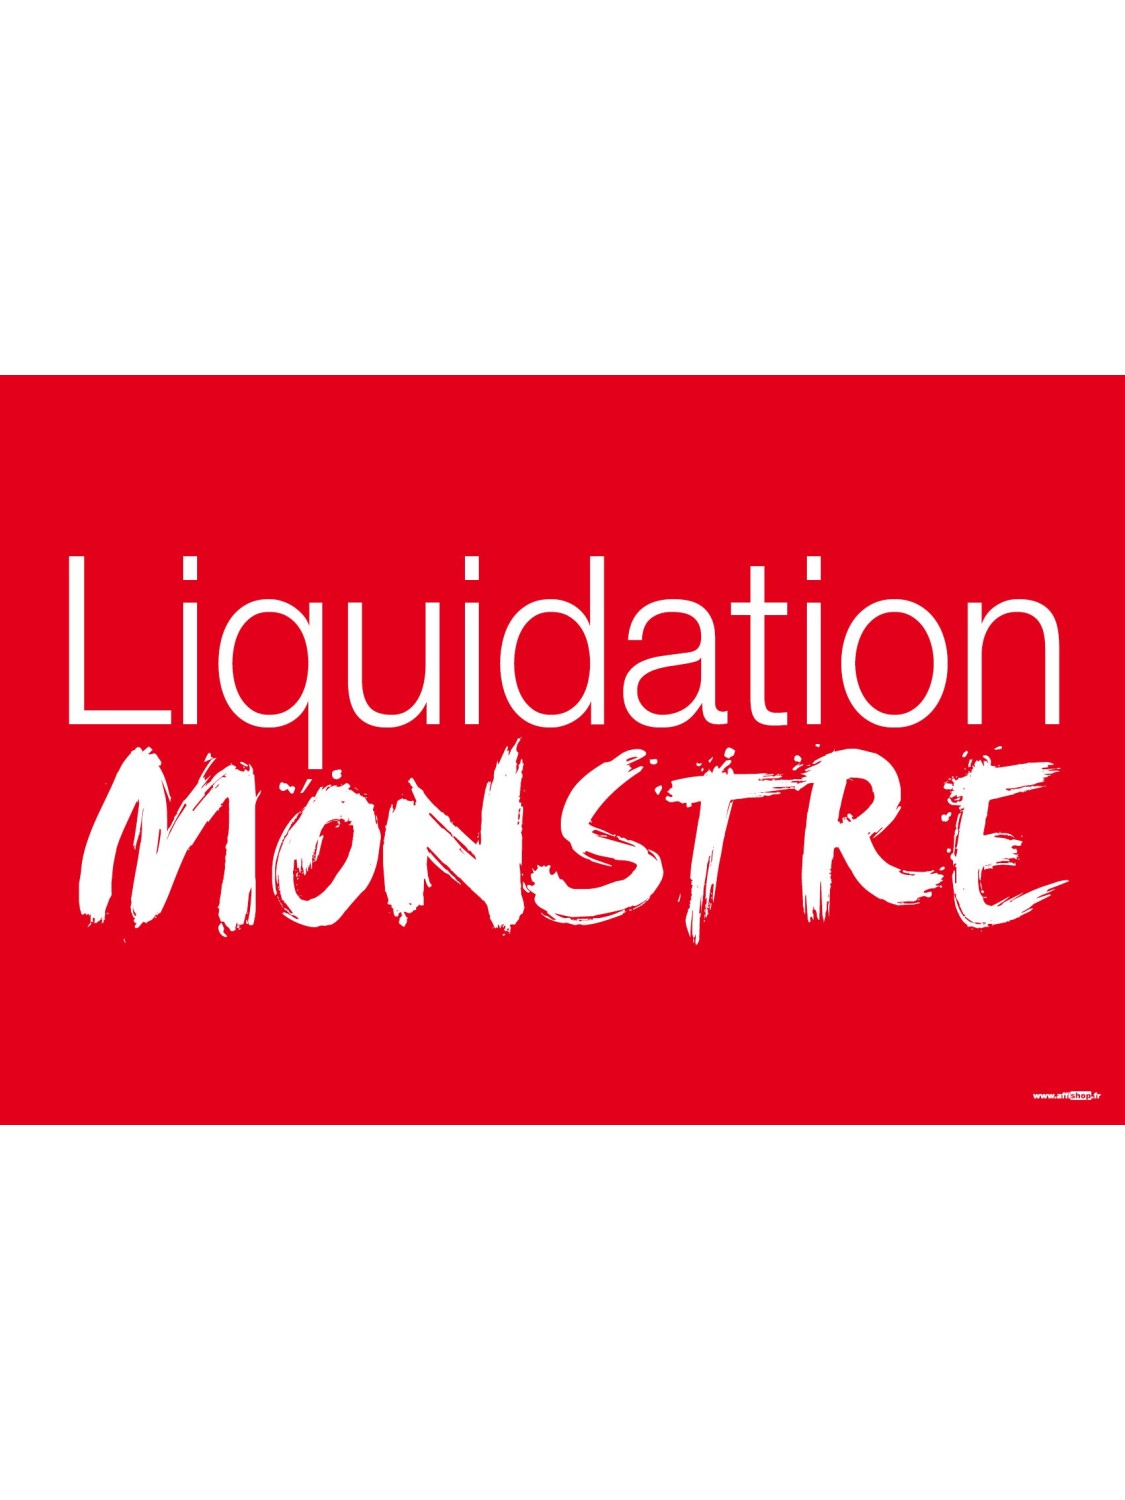 Affiche "liquidation monstre"